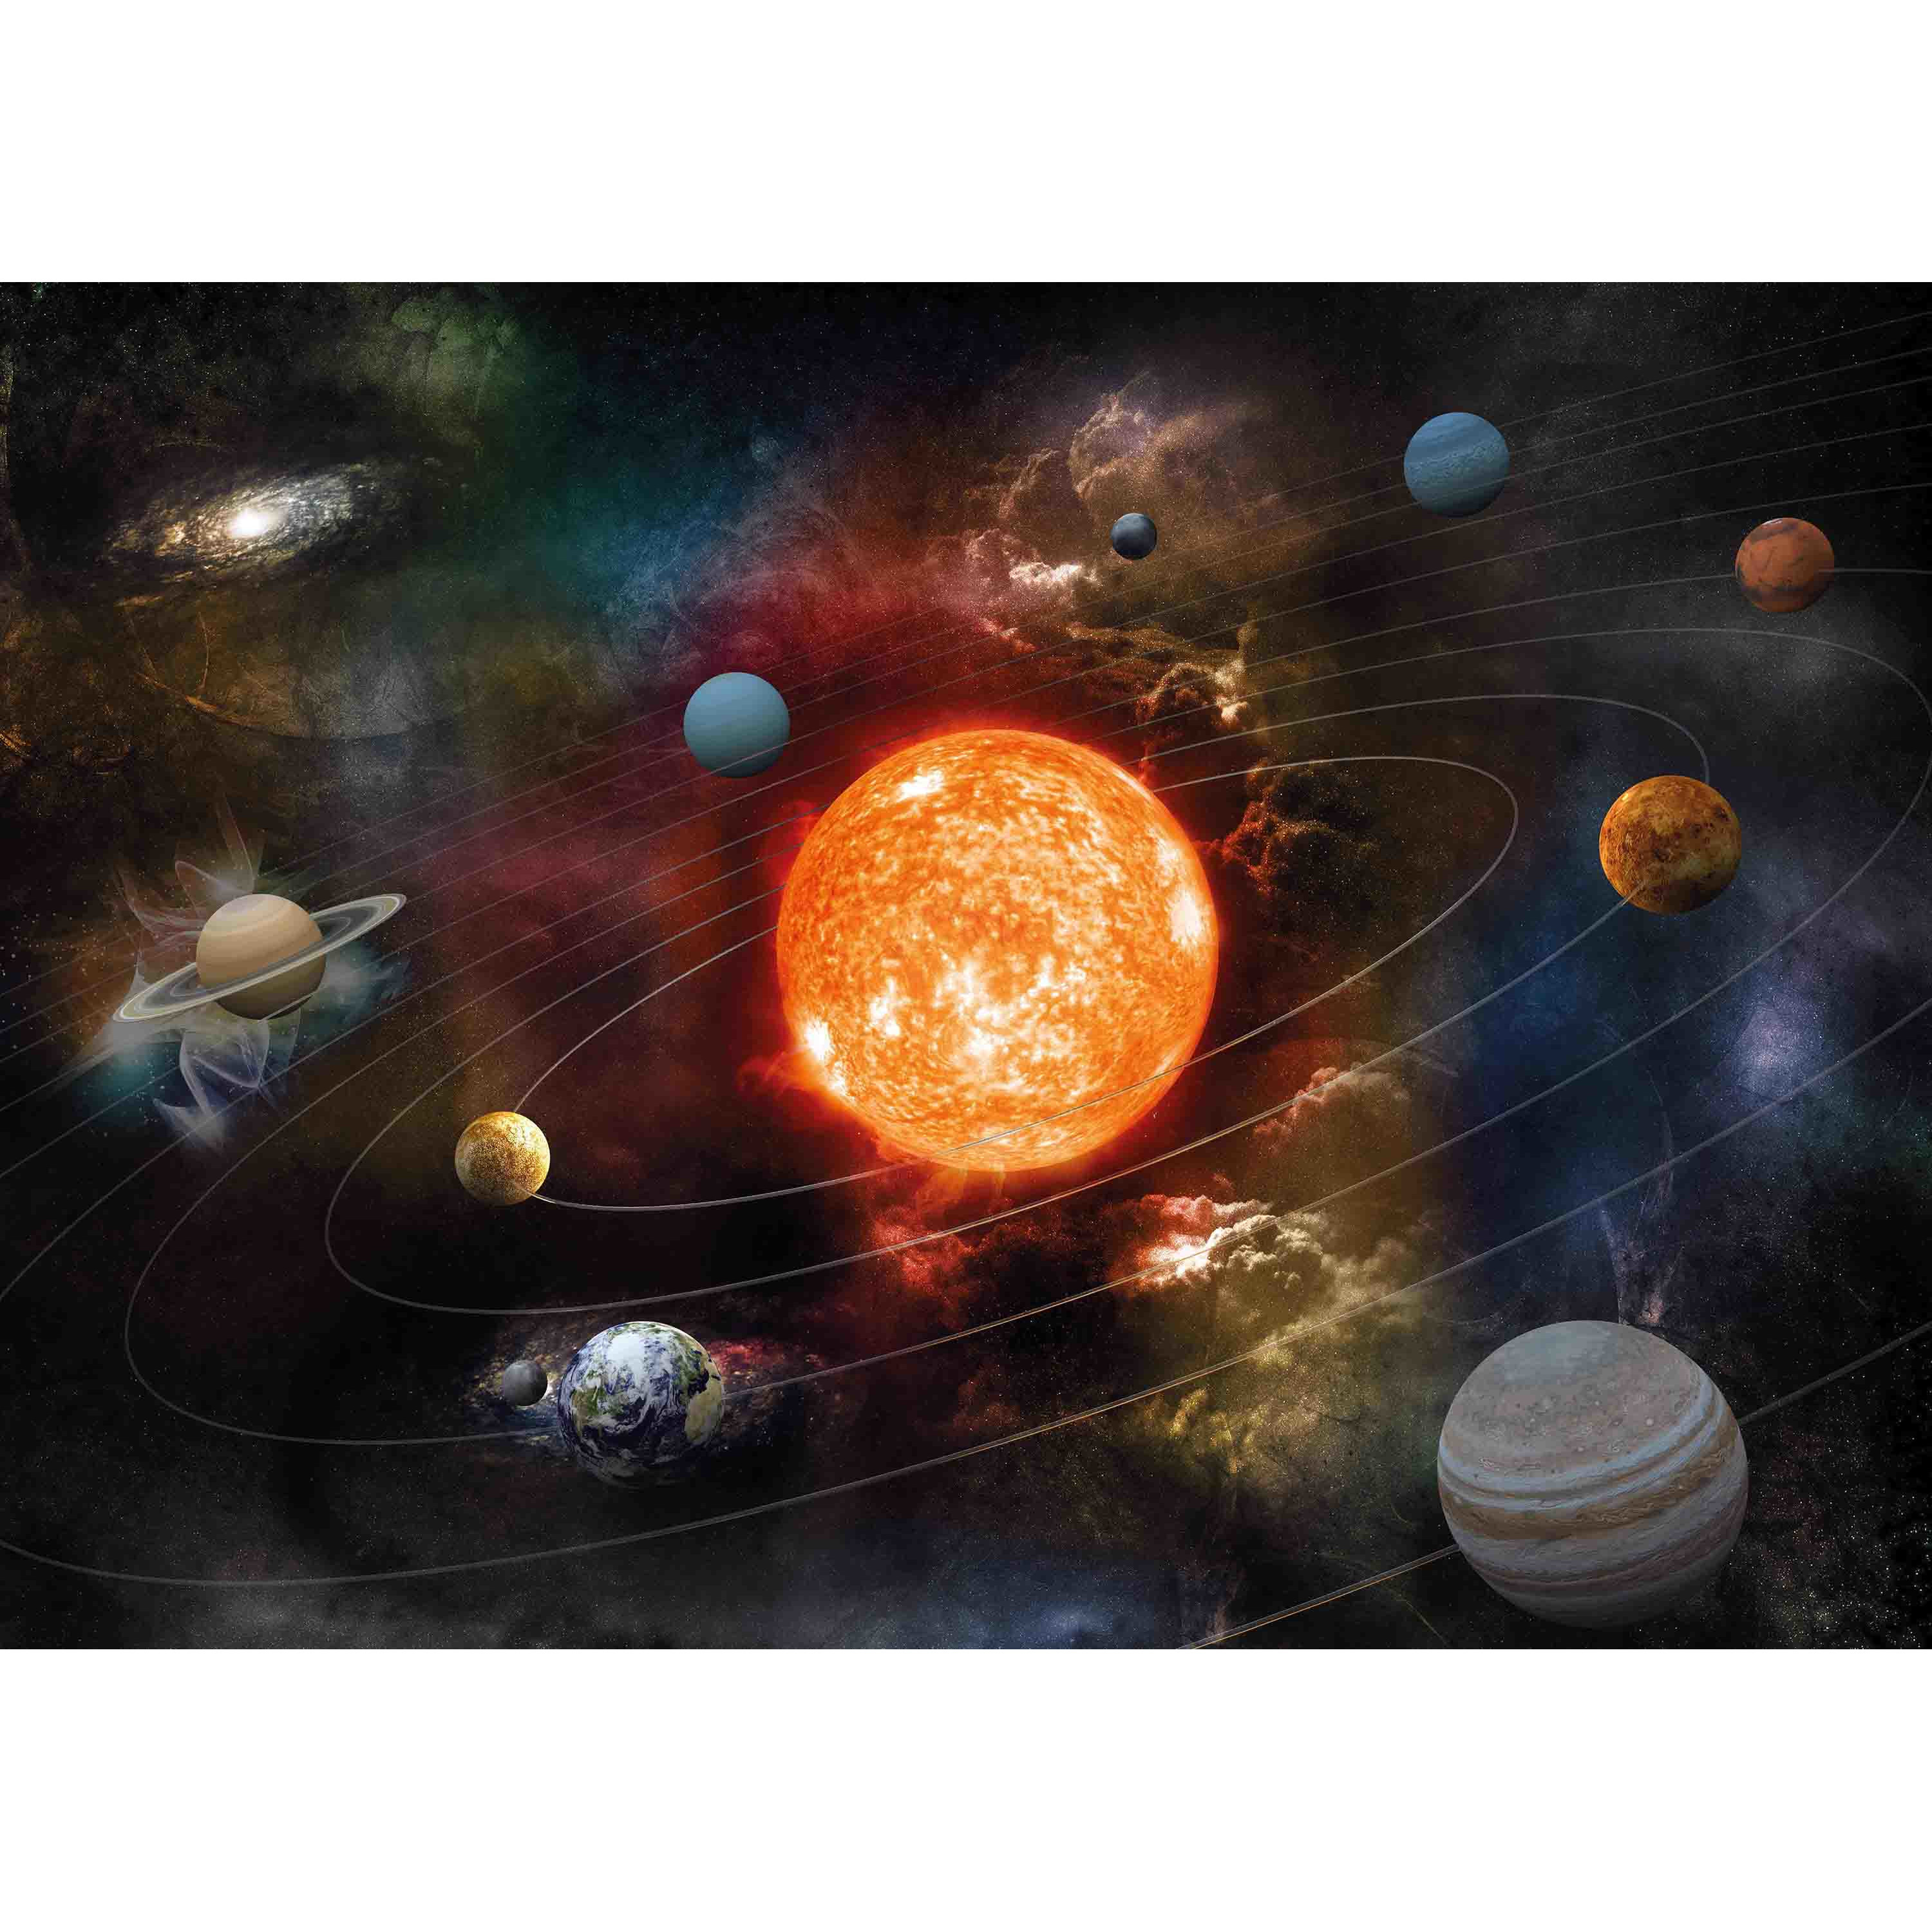 Poster van planeten in zonnestelsel / Melkweg voor op kinderkamer / school 84 x 59 cm